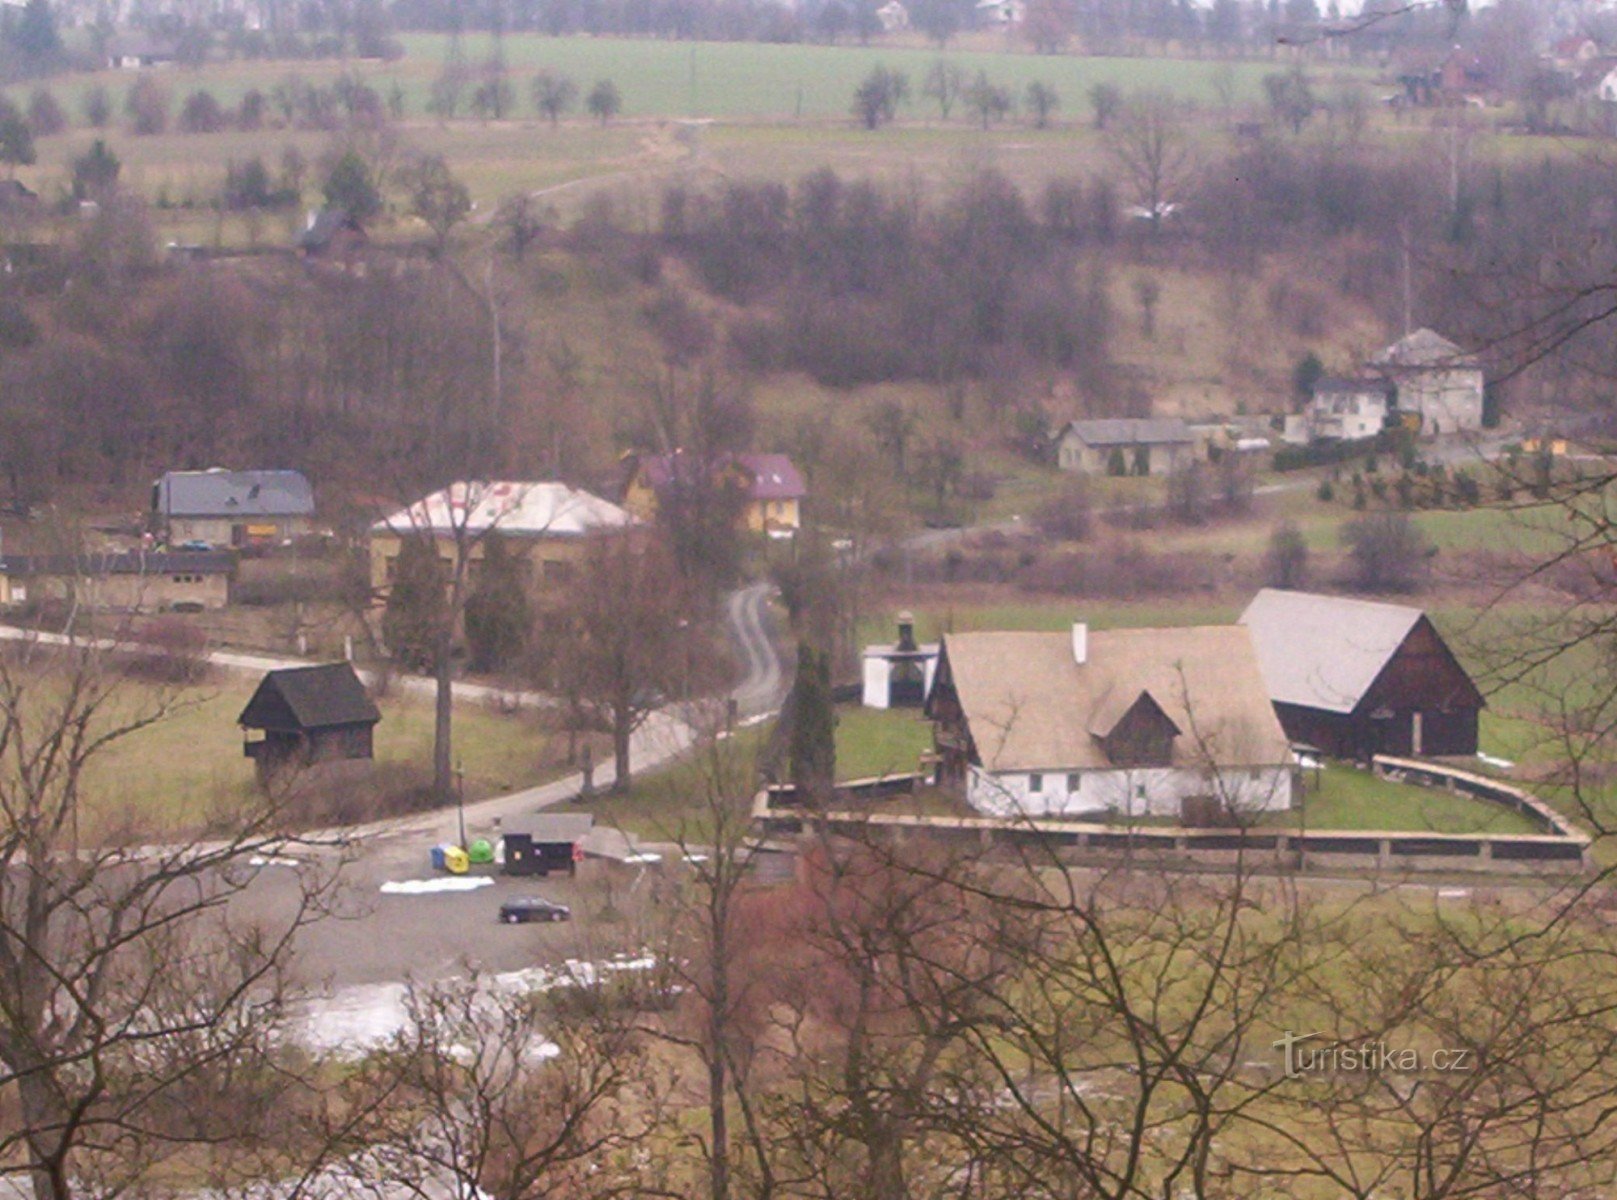 De boerderij is gefotografeerd vanuit het prieel in het park